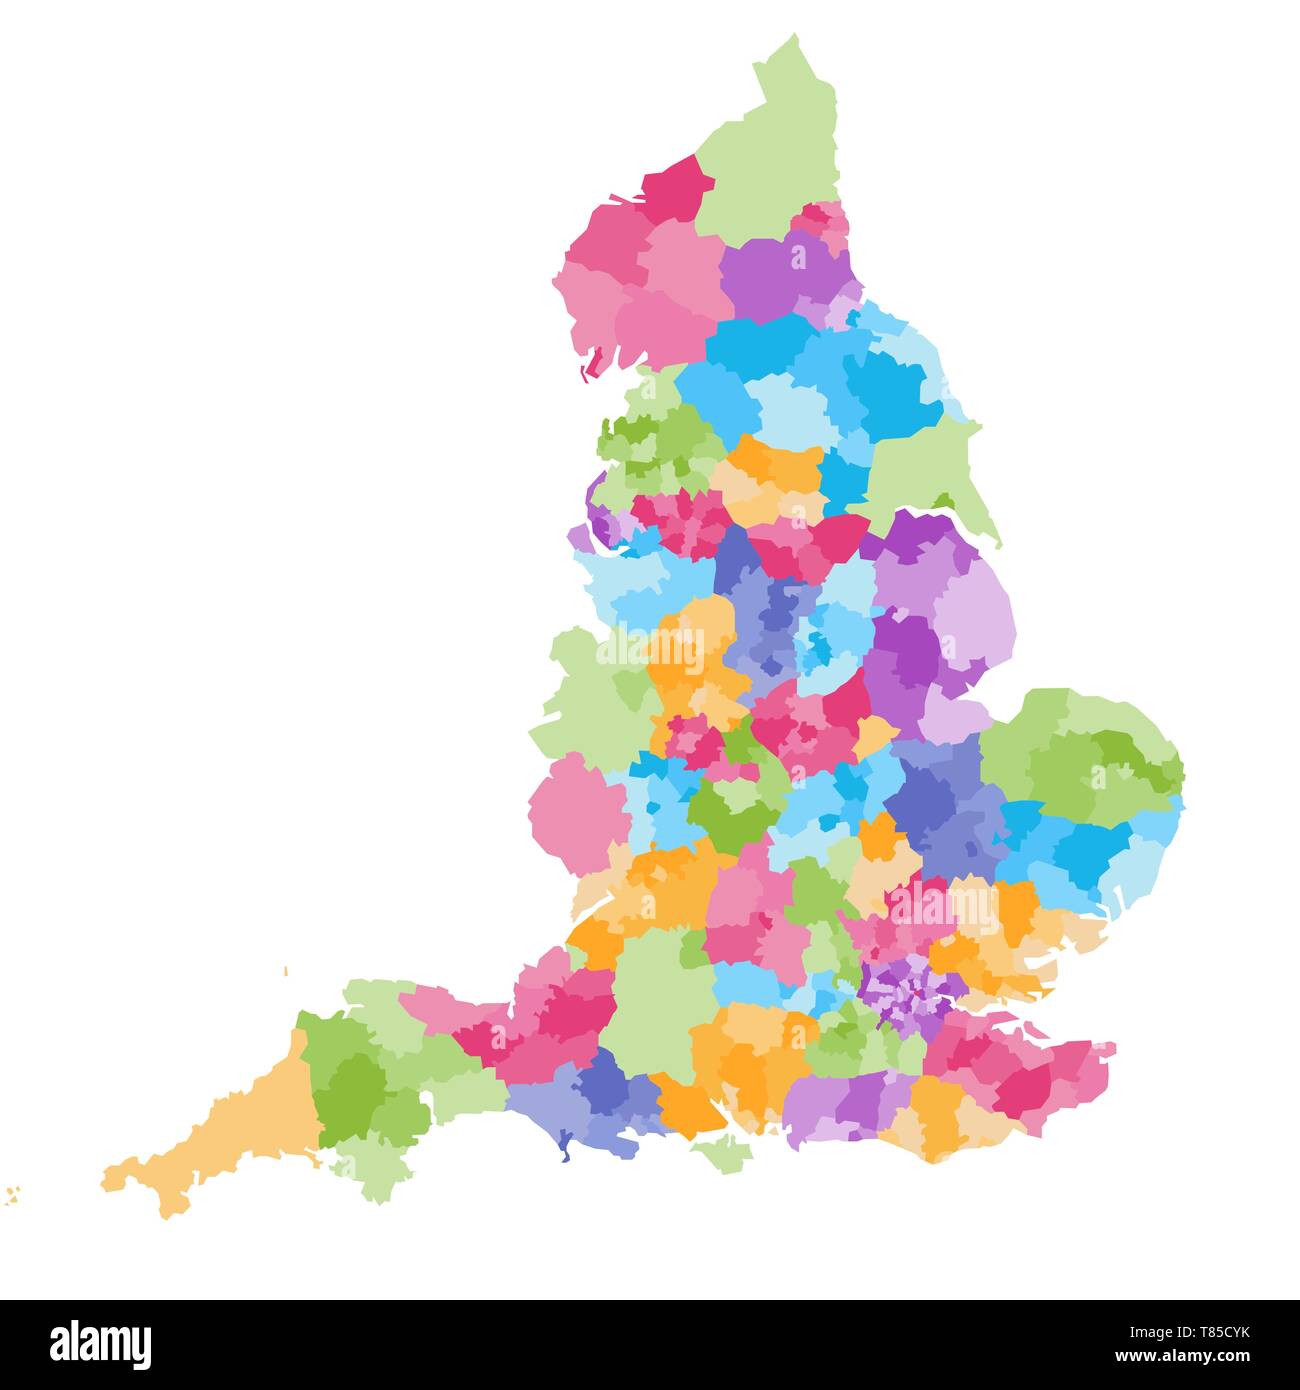 L'Angleterre comtés cérémonieux carte vectorielle Illustration de Vecteur